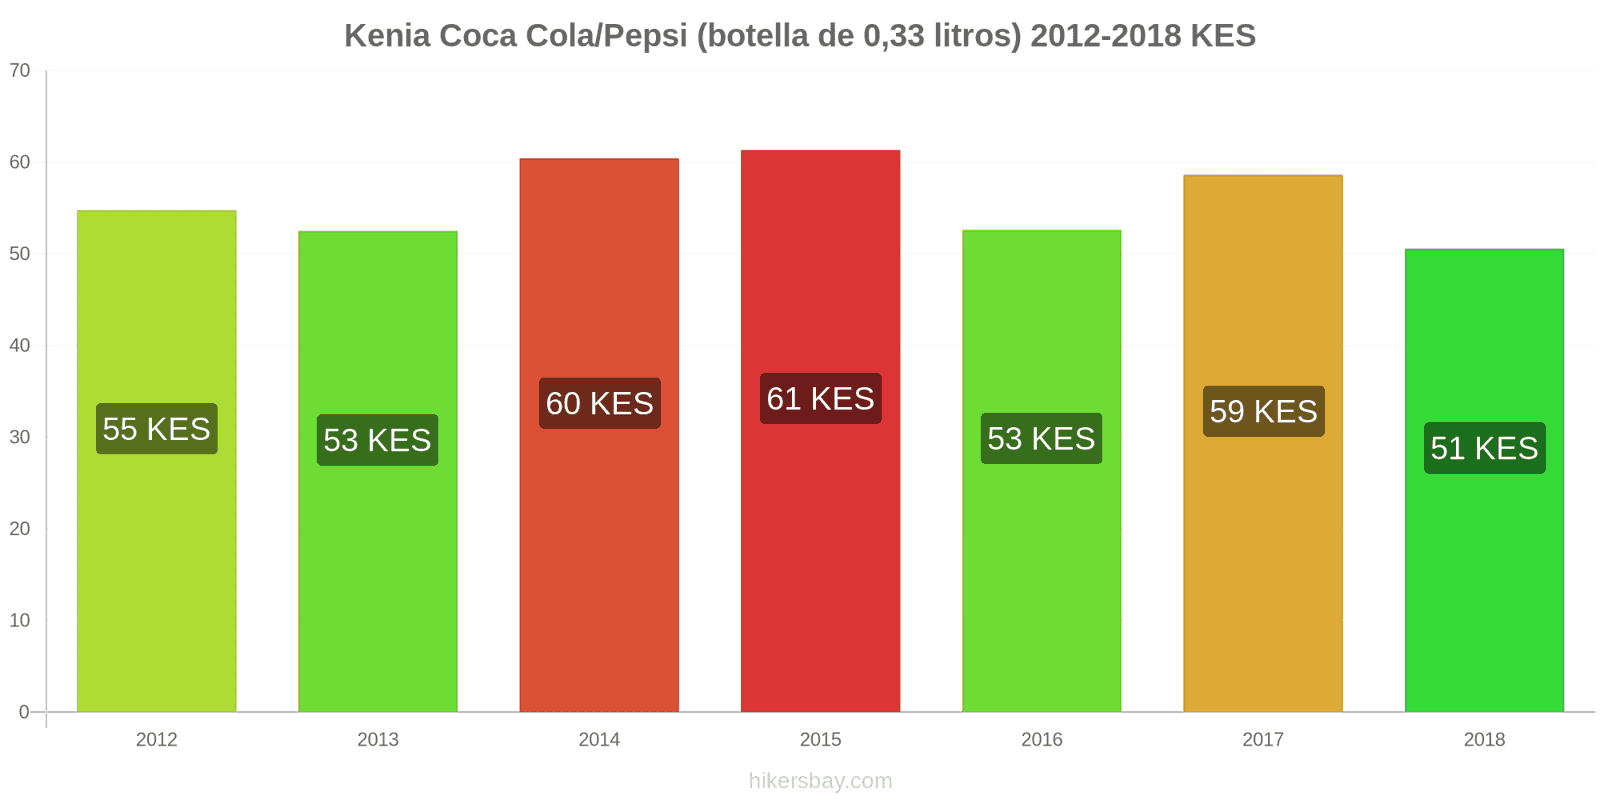 Kenia cambios de precios Coca-Cola/Pepsi (botella de 0.33 litros) hikersbay.com